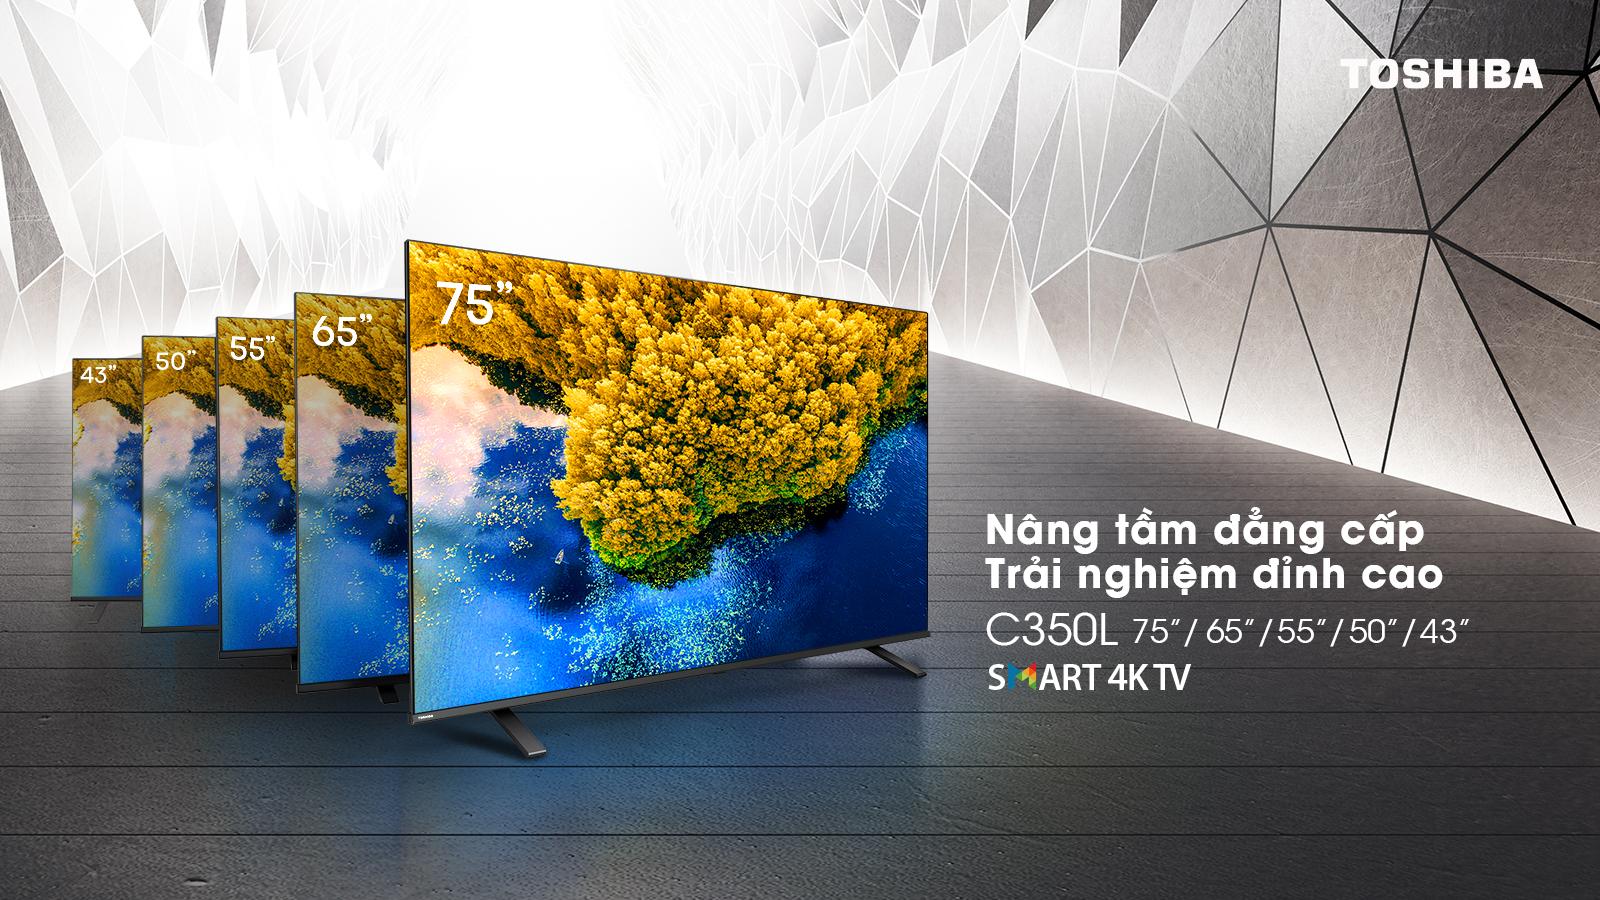 Toshiba TV Việt Nam ra mắt siêu phẩm Tivi thế hệ mới trước thềm FIFA World Cup Qatar 2022™ - Ảnh 4.